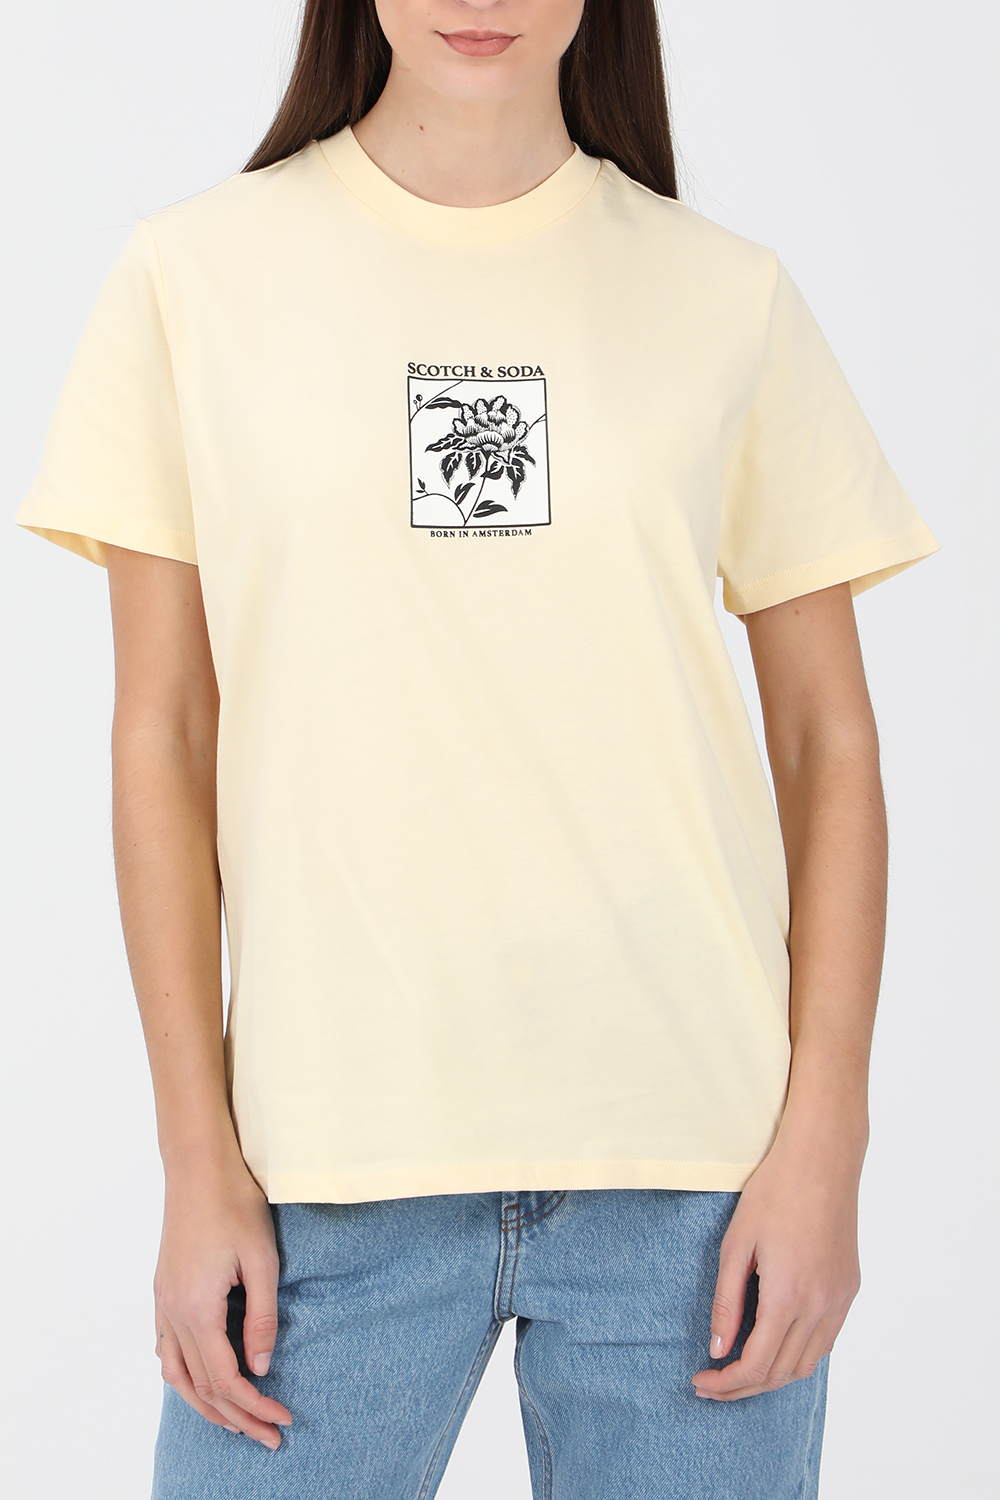 Γυναικεία/Ρούχα/Μπλούζες/Κοντομάνικες SCOTCH & SODA - Γυναικεία κοντομάνικη μπλούζα SCOTCH & SODA κίτρινη